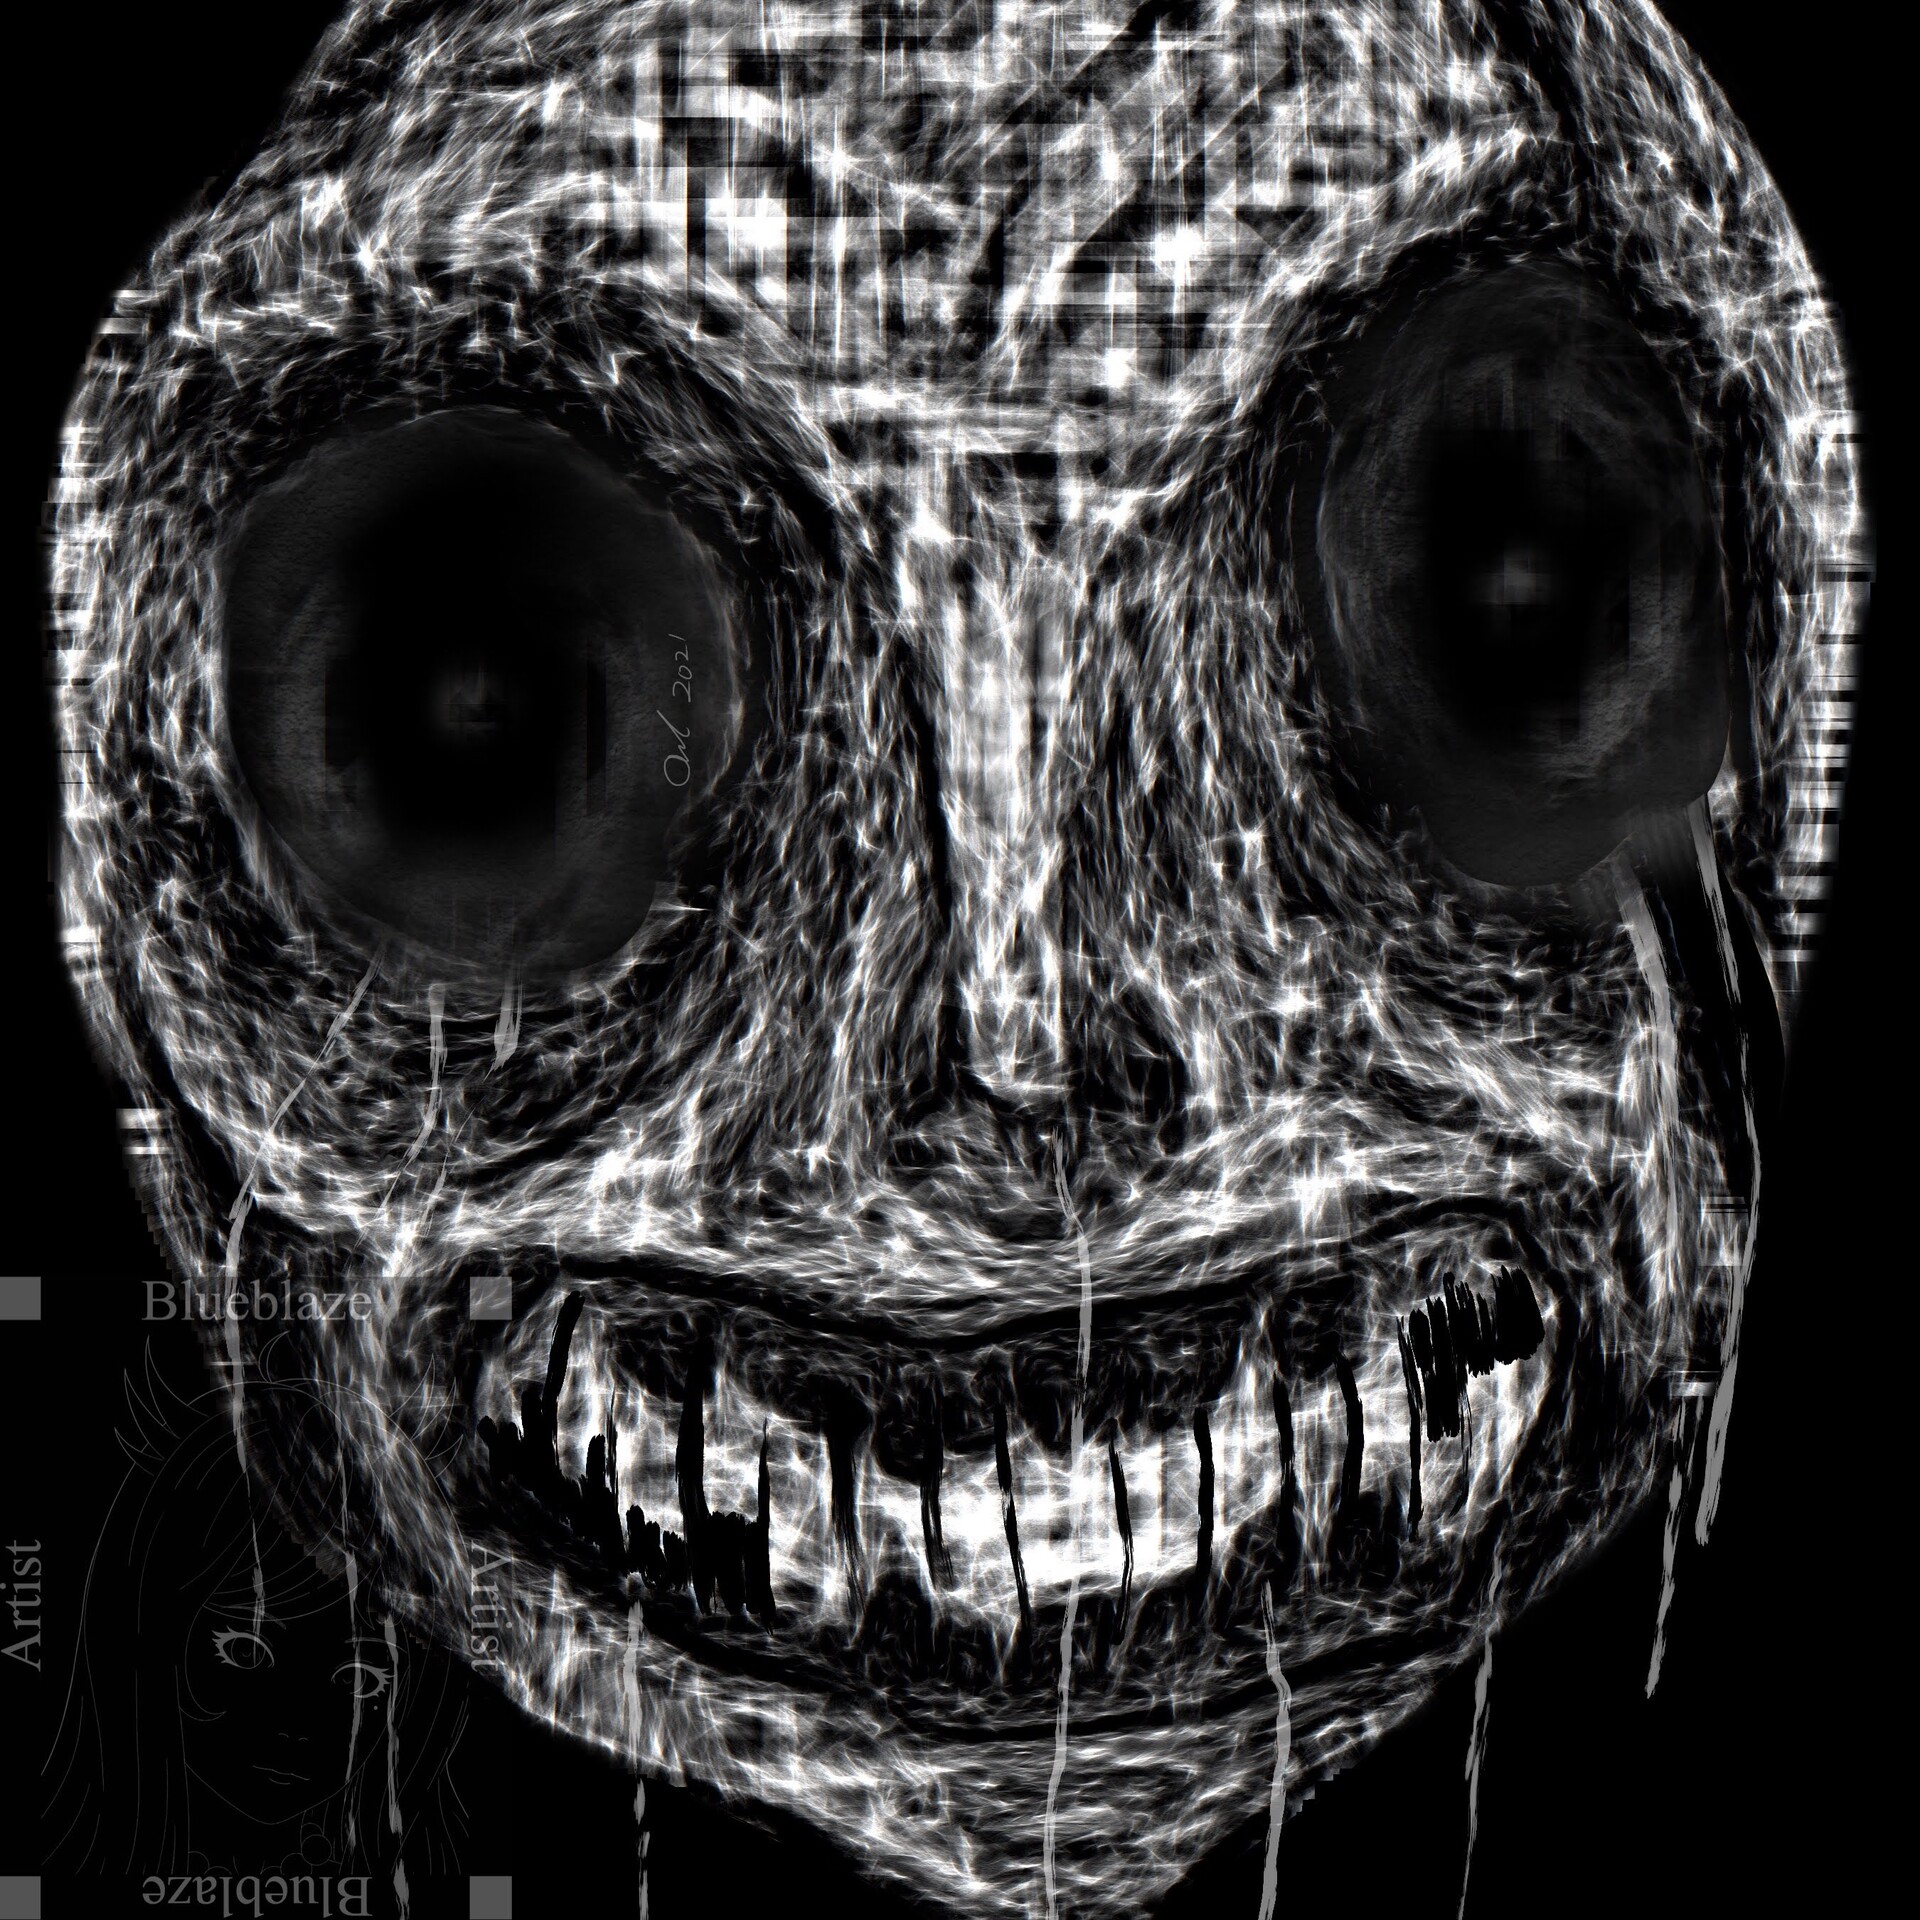 Scary Terror Face - Roblox